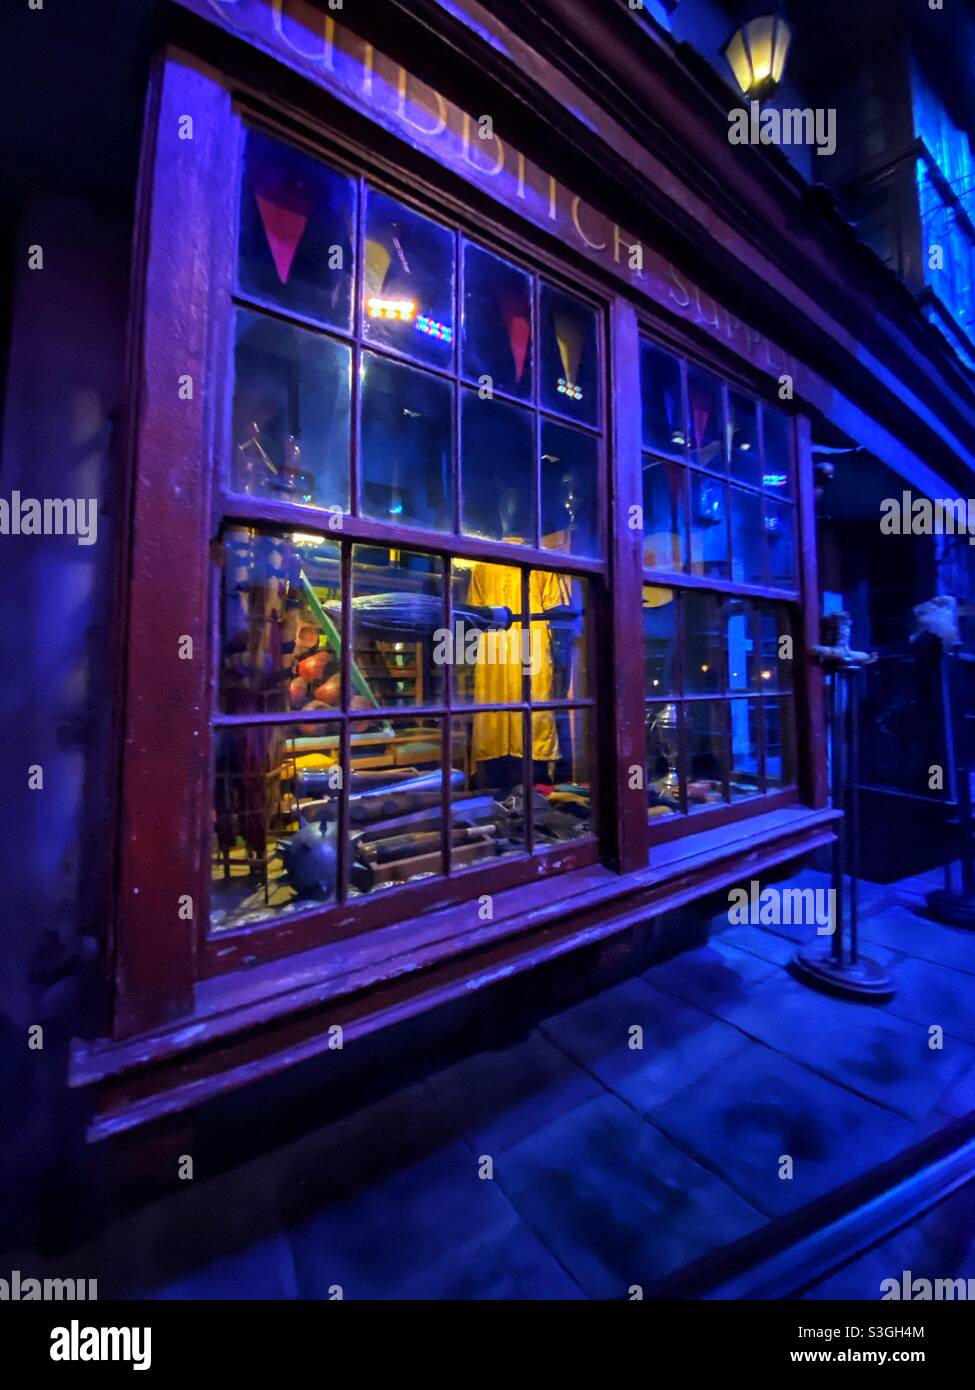 Negozio Quidditch alla mostra Making of Harry Potter al Warner Bros Studio tour, Londra Foto Stock